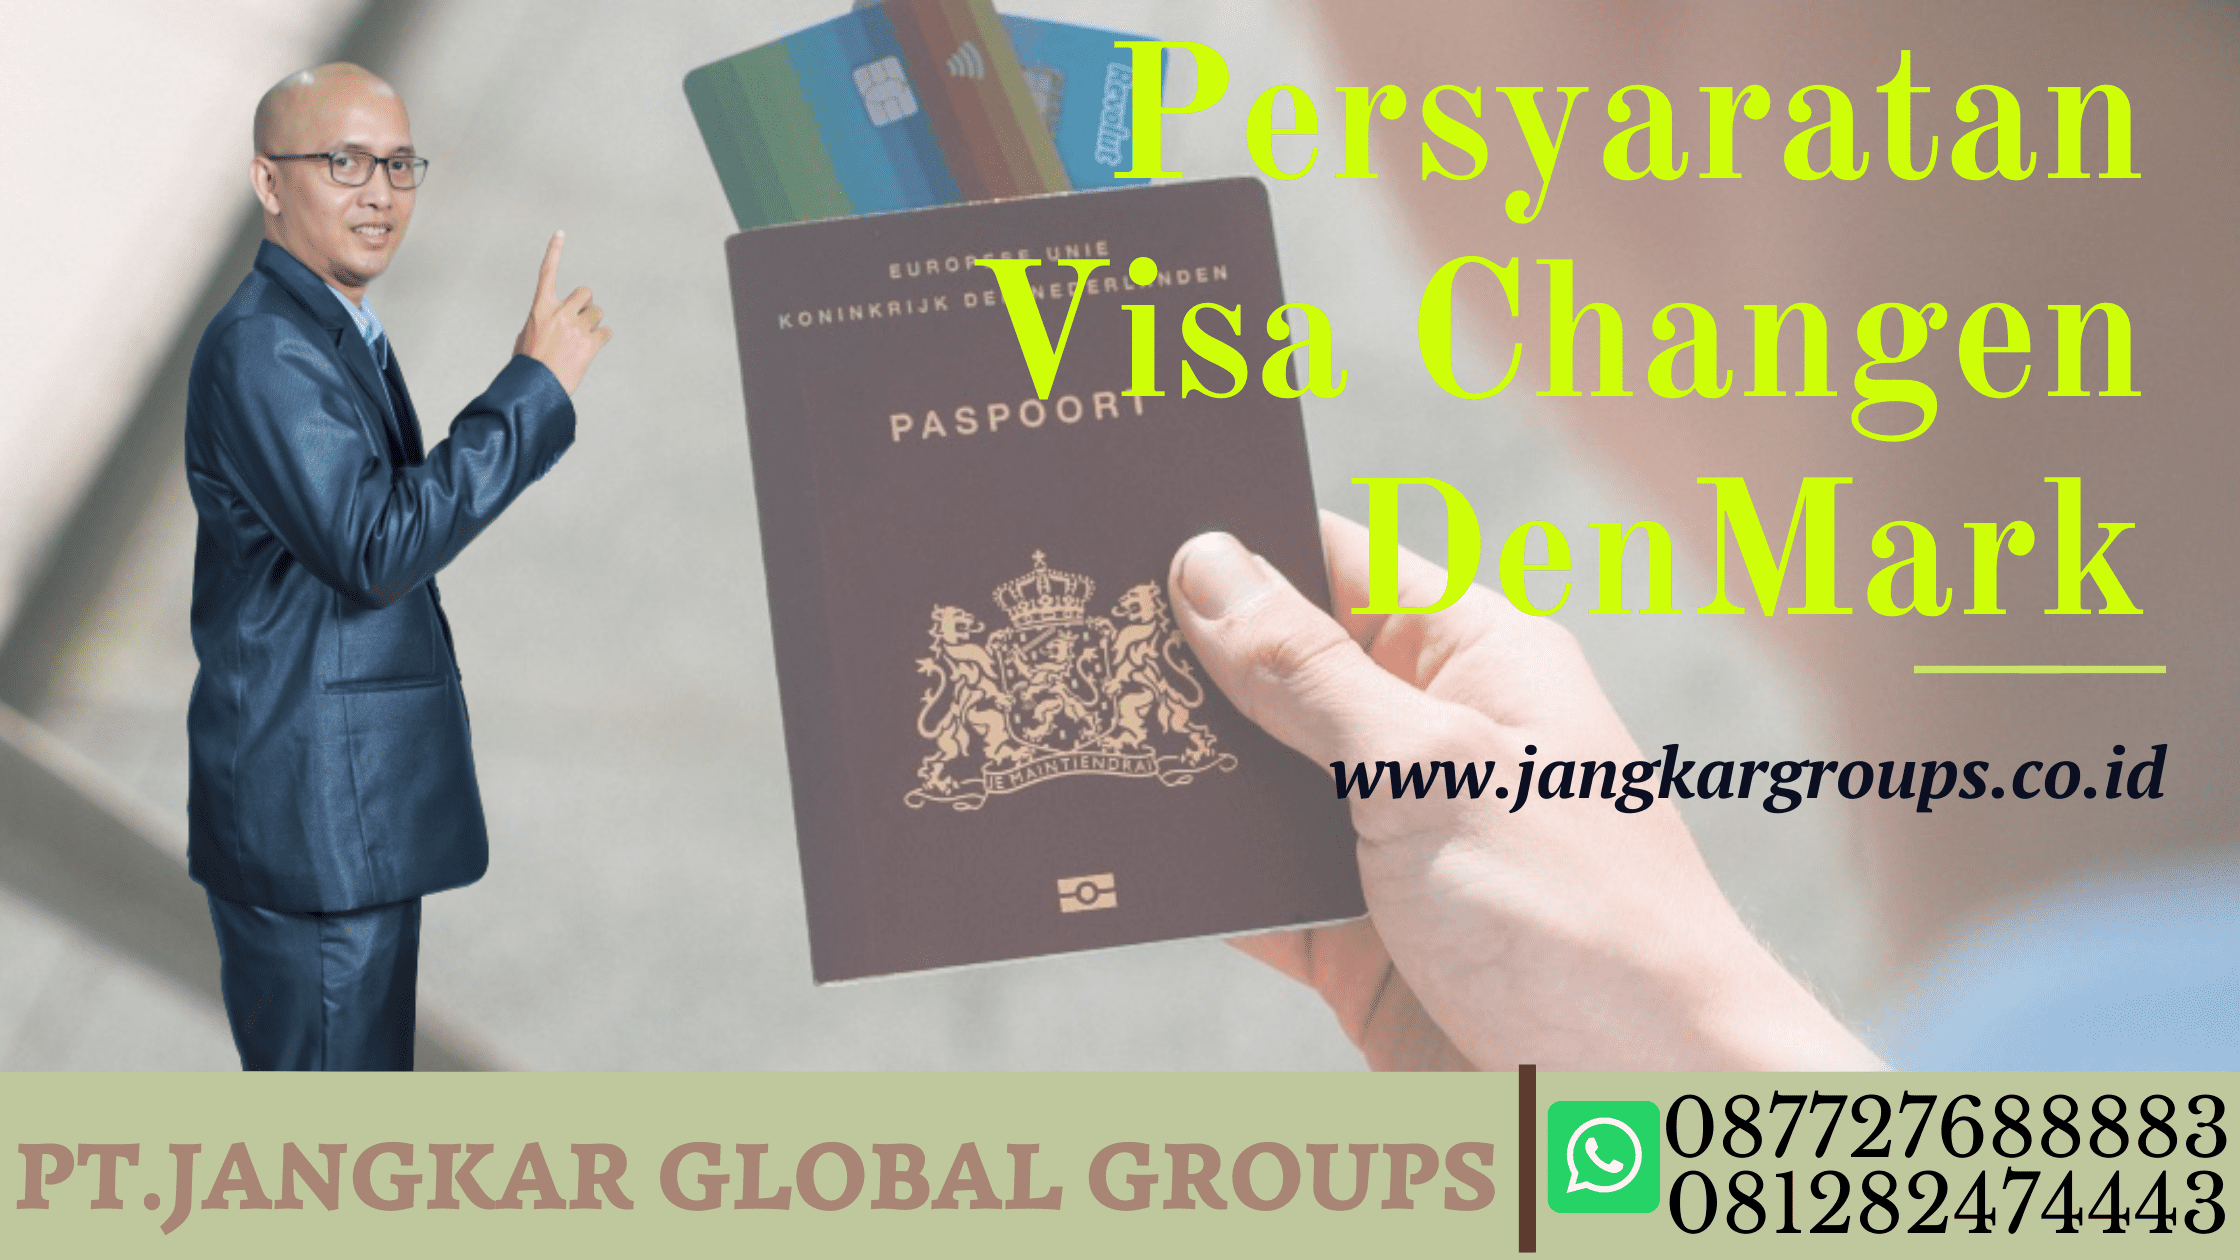 Persyaratan Visa Changen DenMark